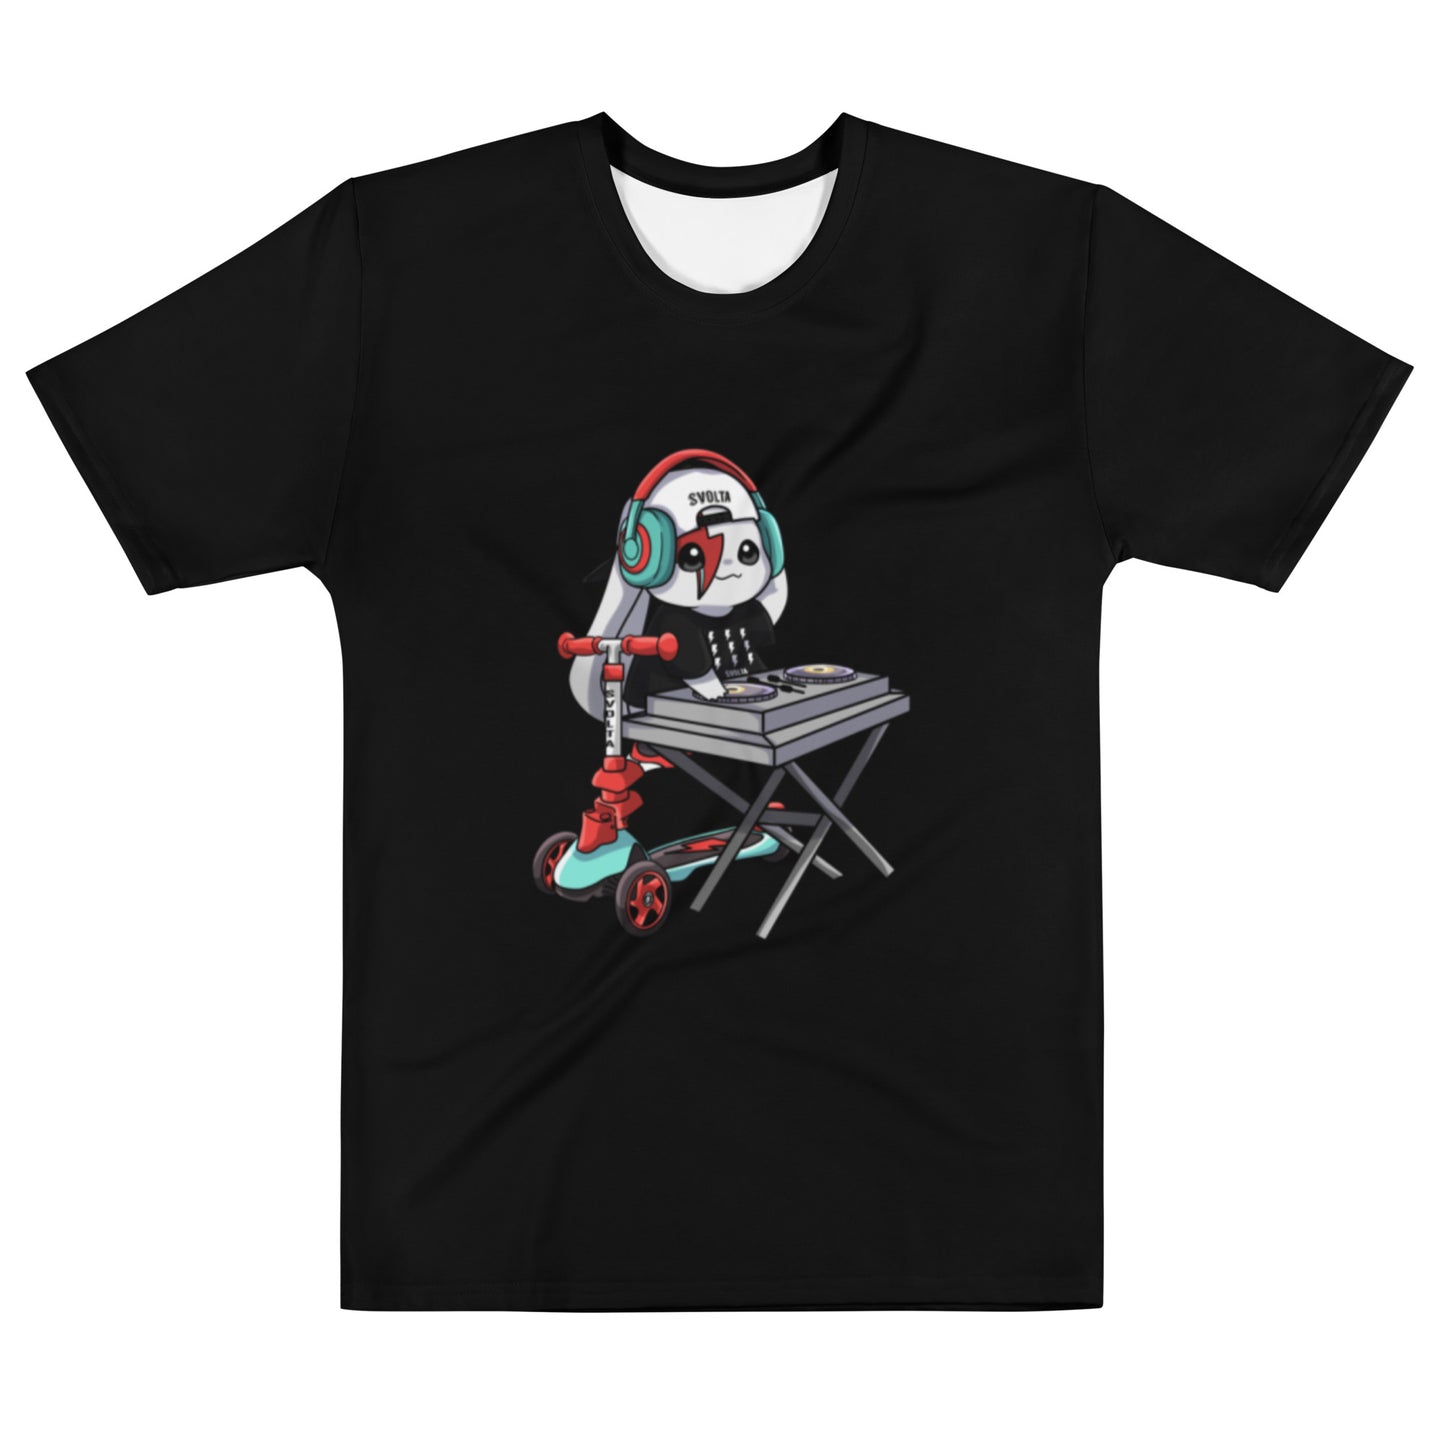 SVOLTA Kawaii Rebel DJ T-shirt in Black, XS-XL - Teen to Adult